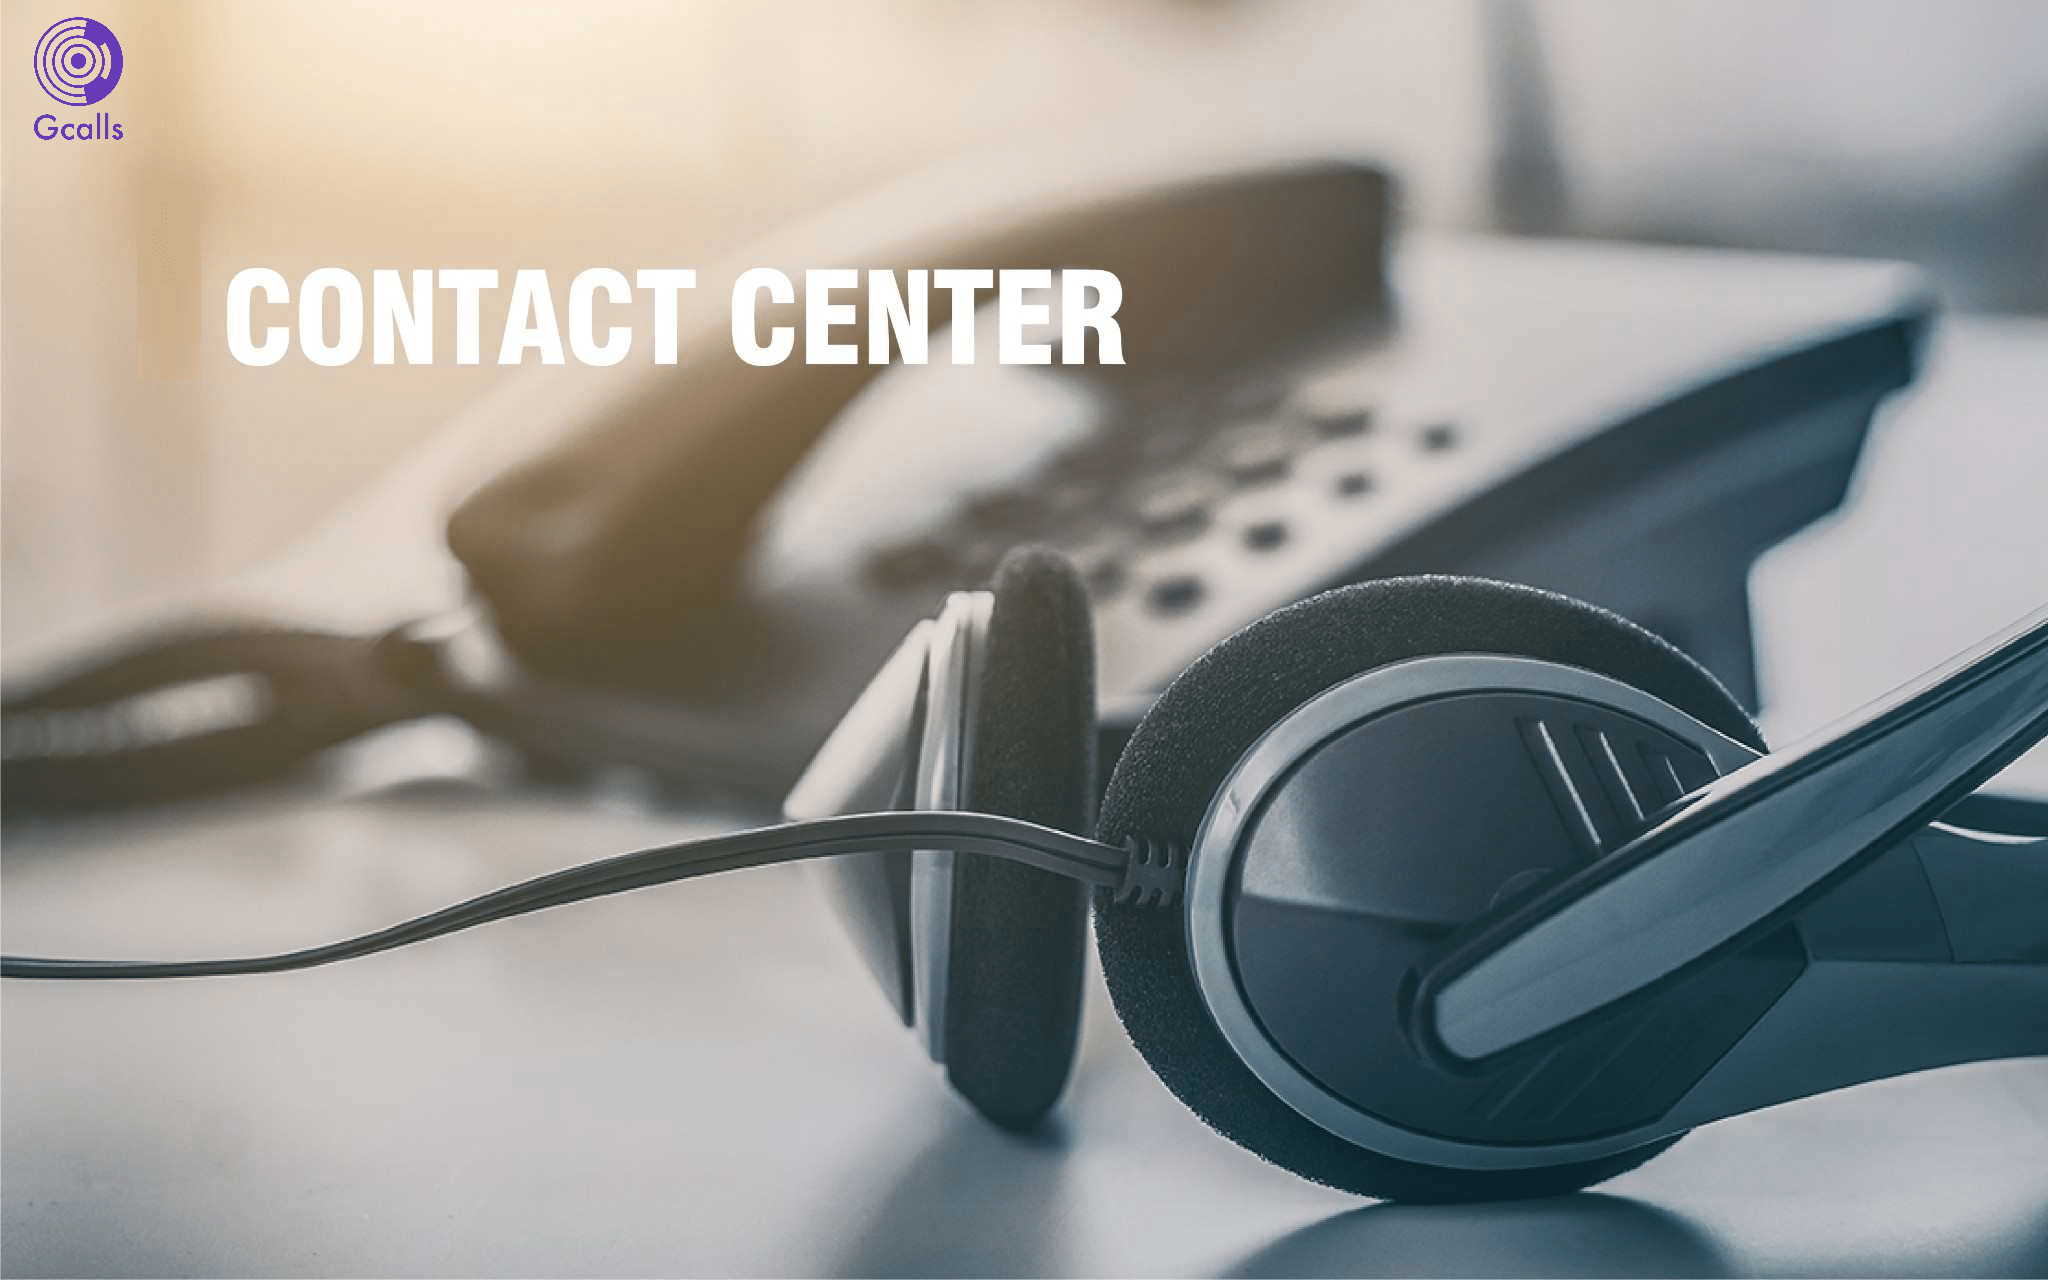 Công ty cung cấp dịch vụ tổng đài contact center - call center tốt nhất?